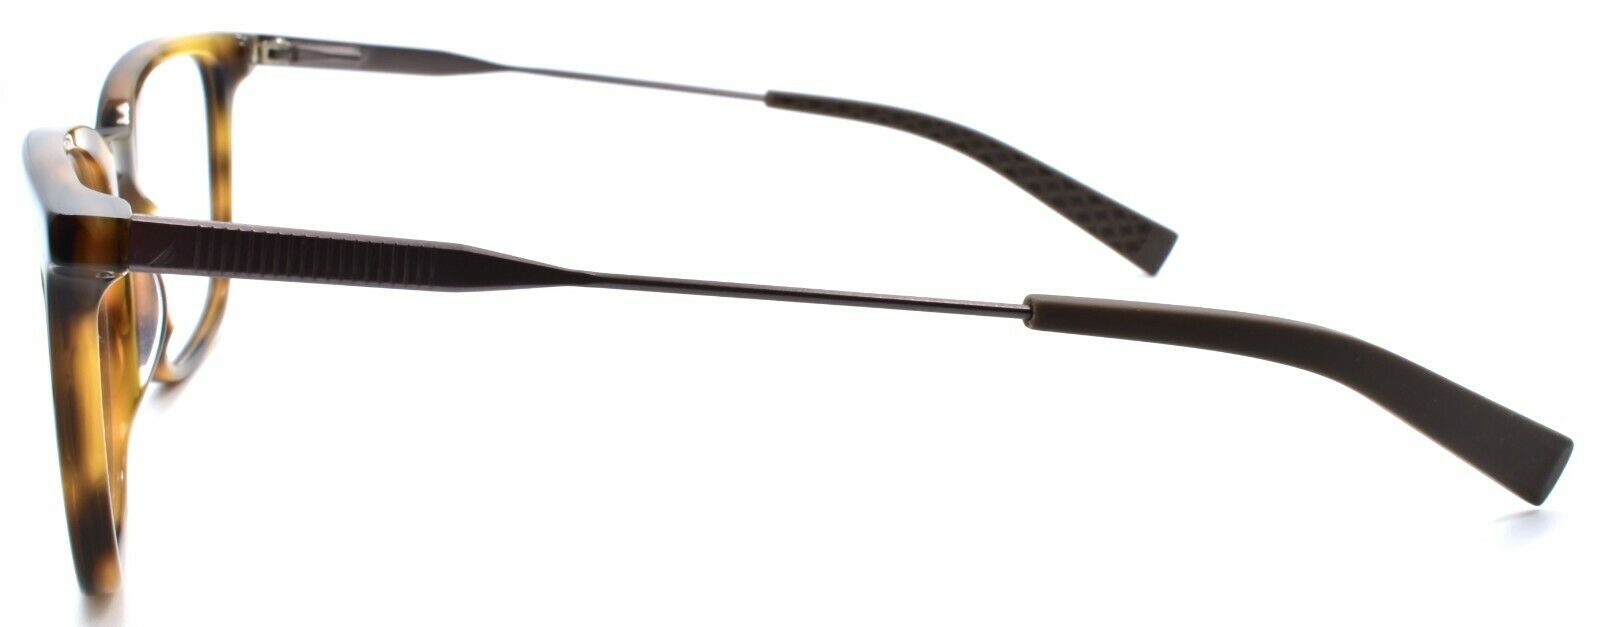 3-Nautica N8149 218 Men's Eyeglasses Frames 55-19-140 Brown Tortoise-886895432221-IKSpecs